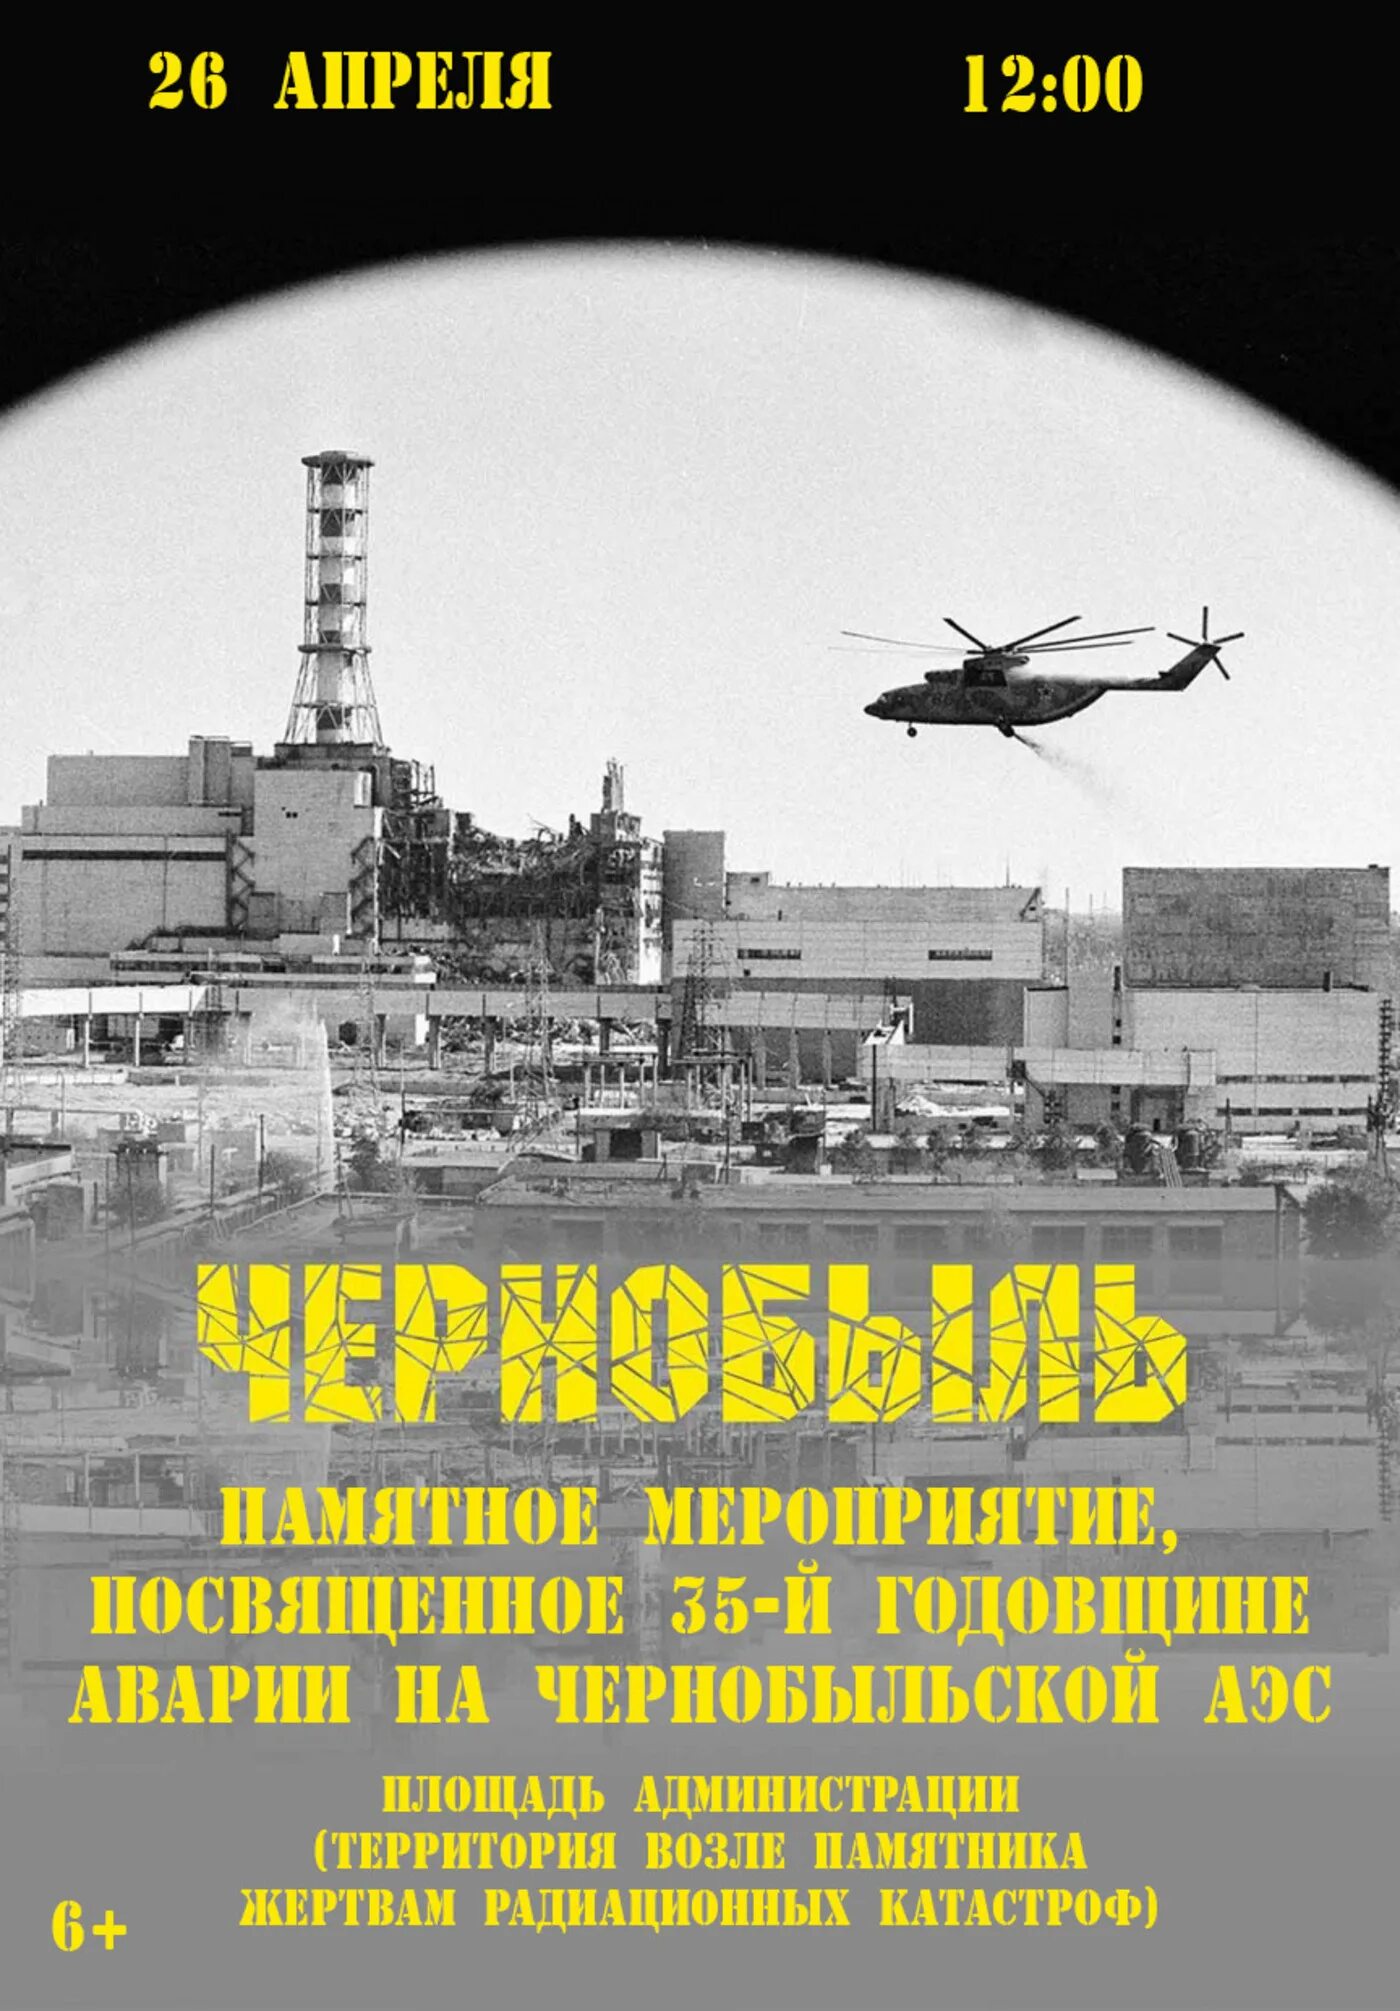 26 апреля чернобыль. Чернобыль 26 апреля 1986. 35 Лет Чернобыльской АЭС. Годовщина Чернобыльской аварии. 35 Лет Чернобыльской катастрофе.